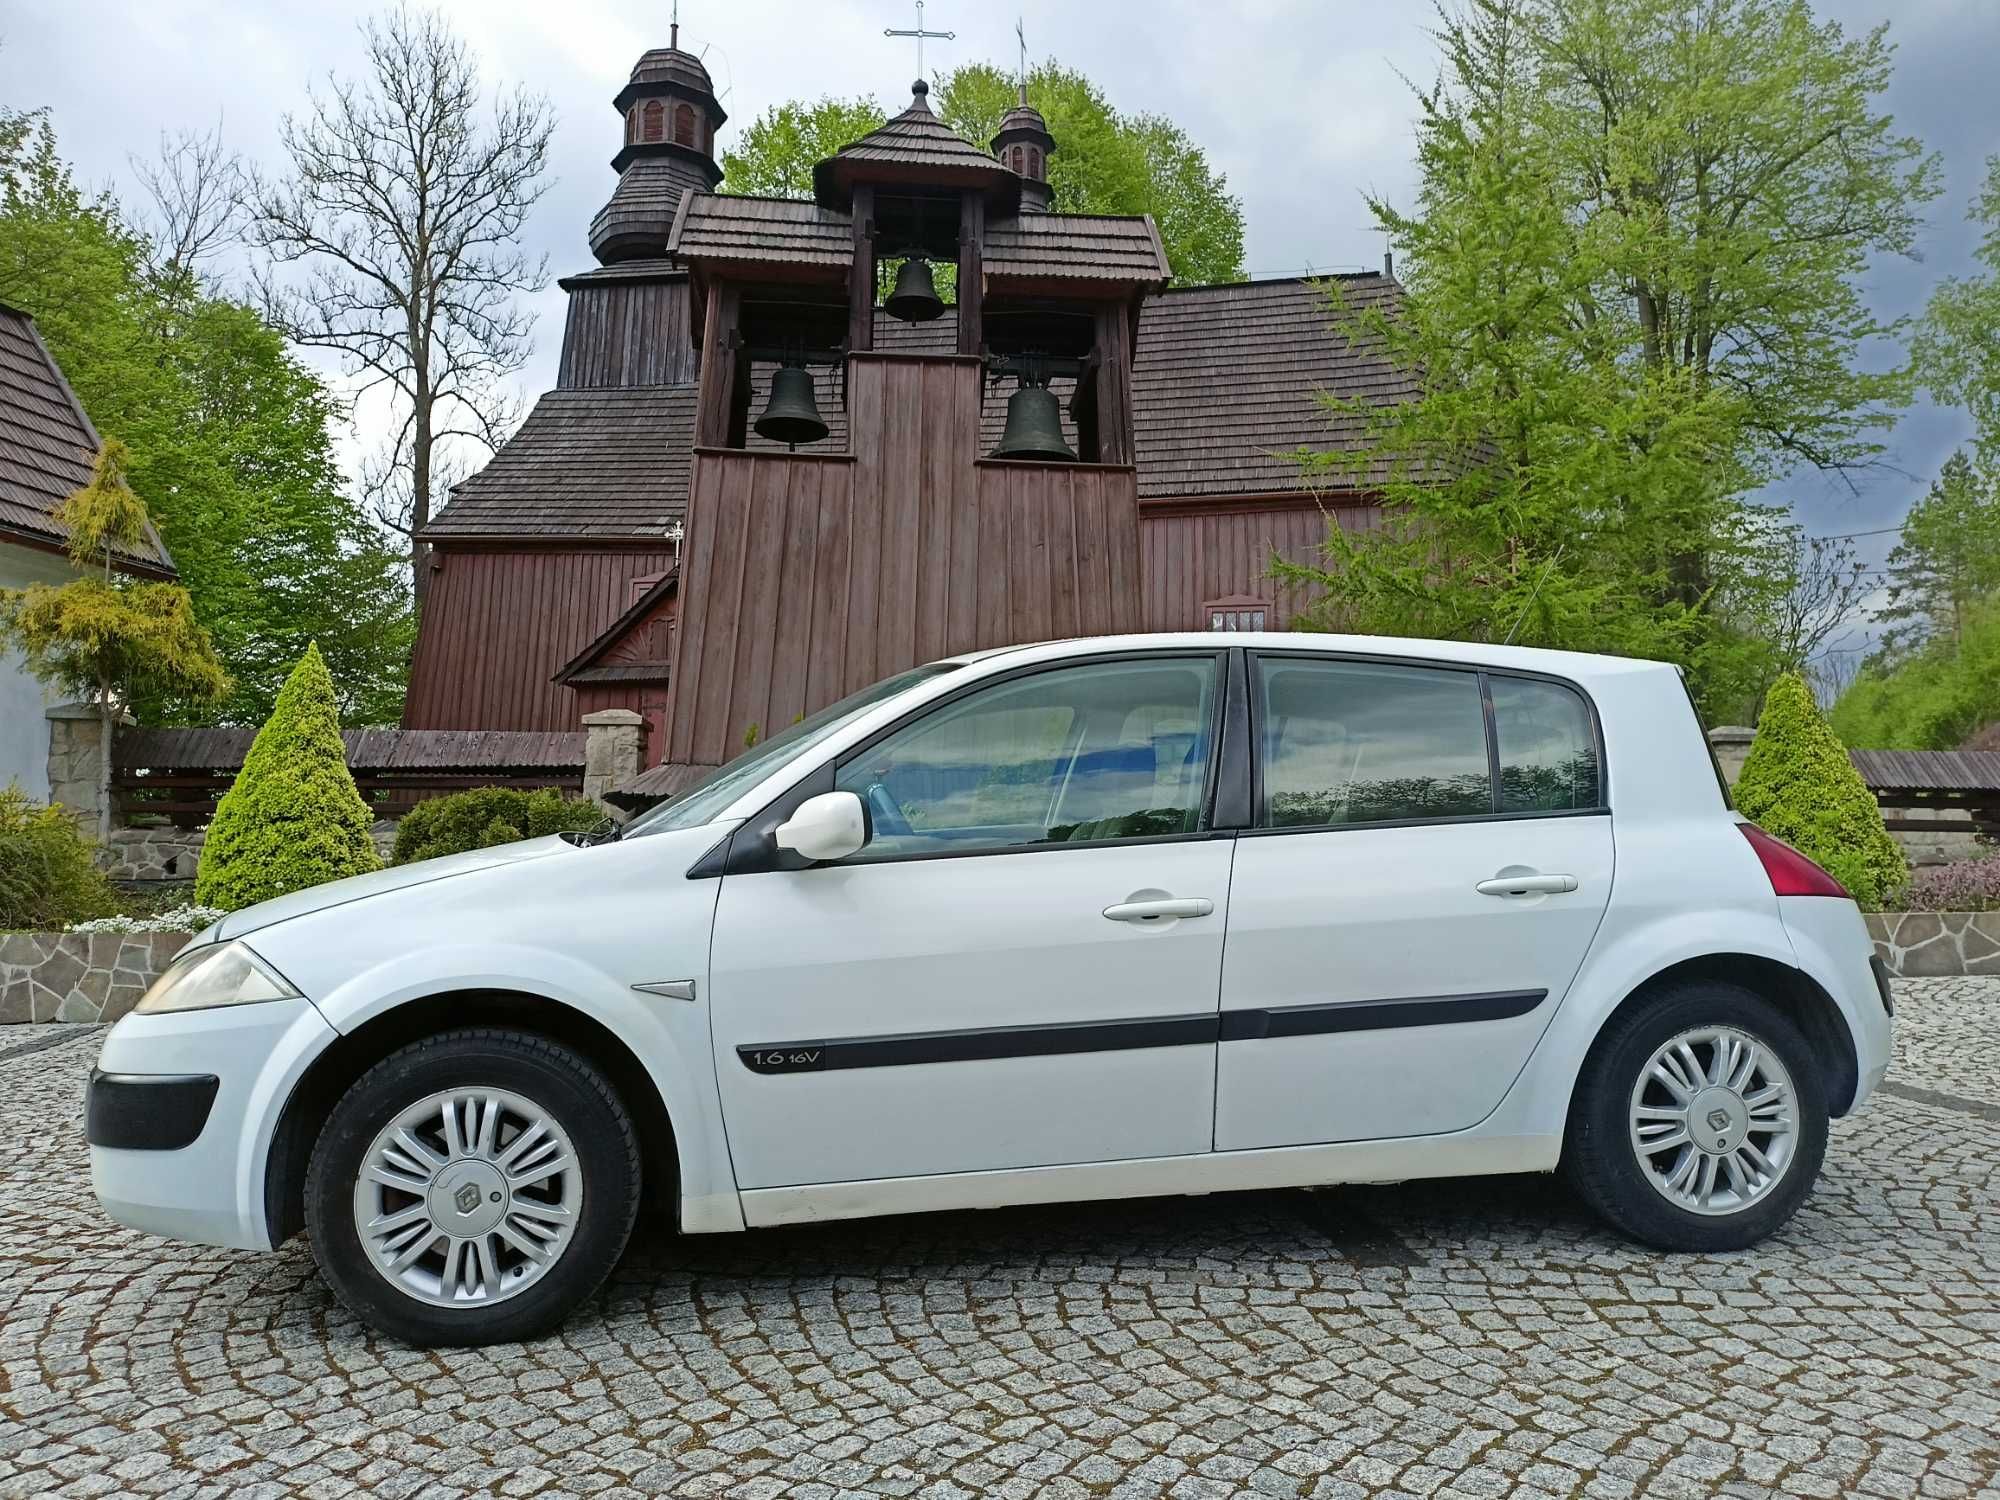 Śliczna Renault MEGANE 1,6 -GAZ-Klima -sprawna -Biel alpejska